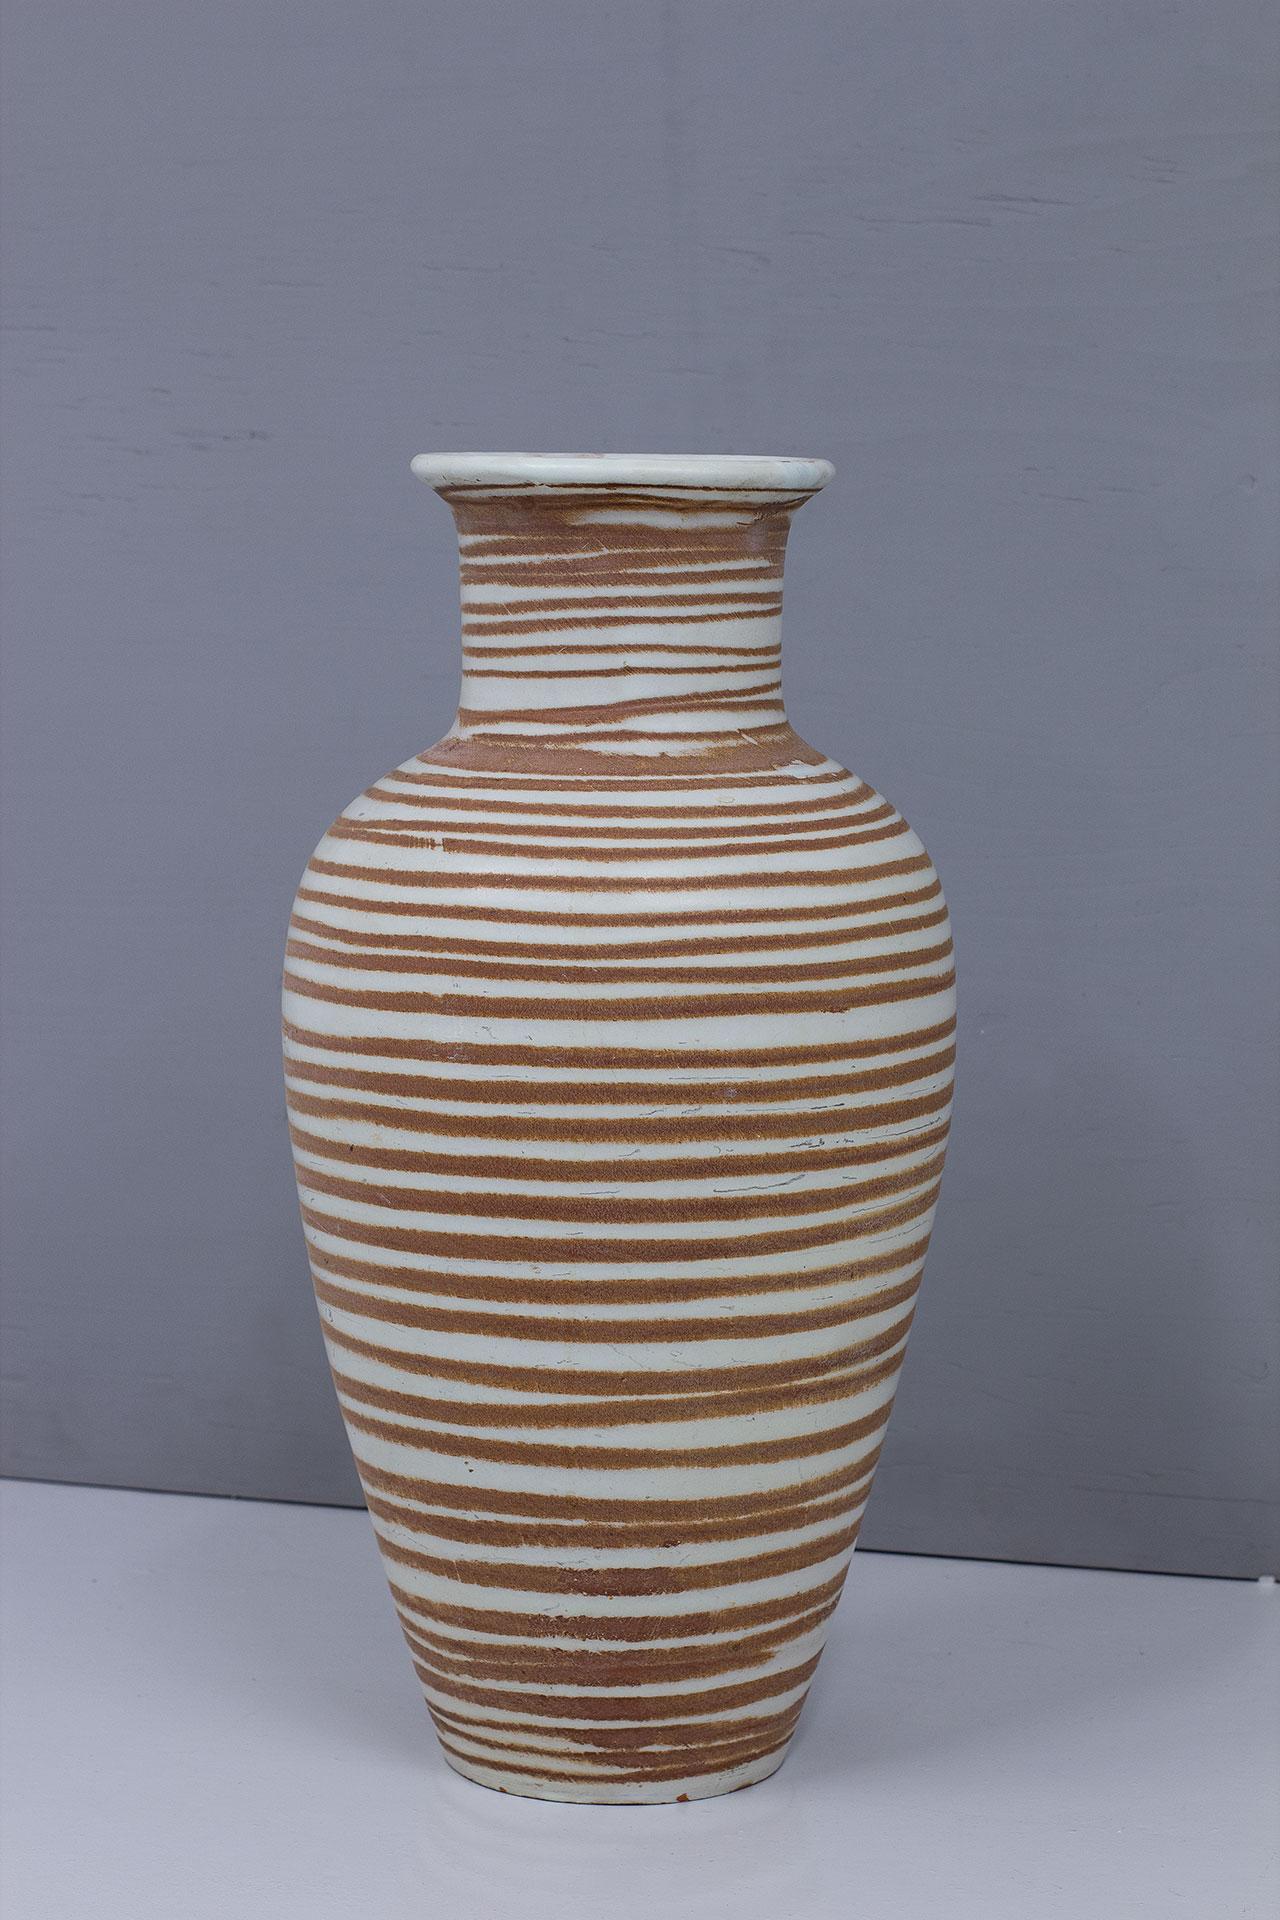 Grand vase de sol en céramique suédoise conçu par Anna-Lisa Thomson.
Fabriqué par Upsala-Ekeby à Uppsala, Suède, vers les années 1940.
Le vase est en faïence émaillée avec un motif en spirale dessiné à la main.
Impression sur le fond : 